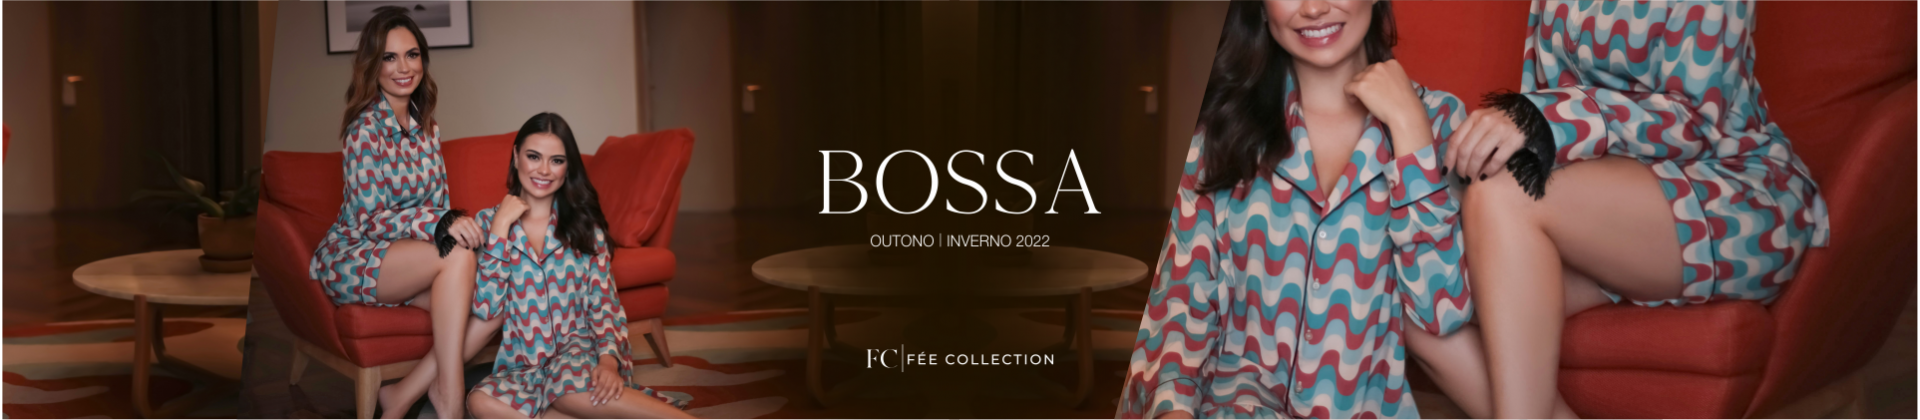 Bossa1